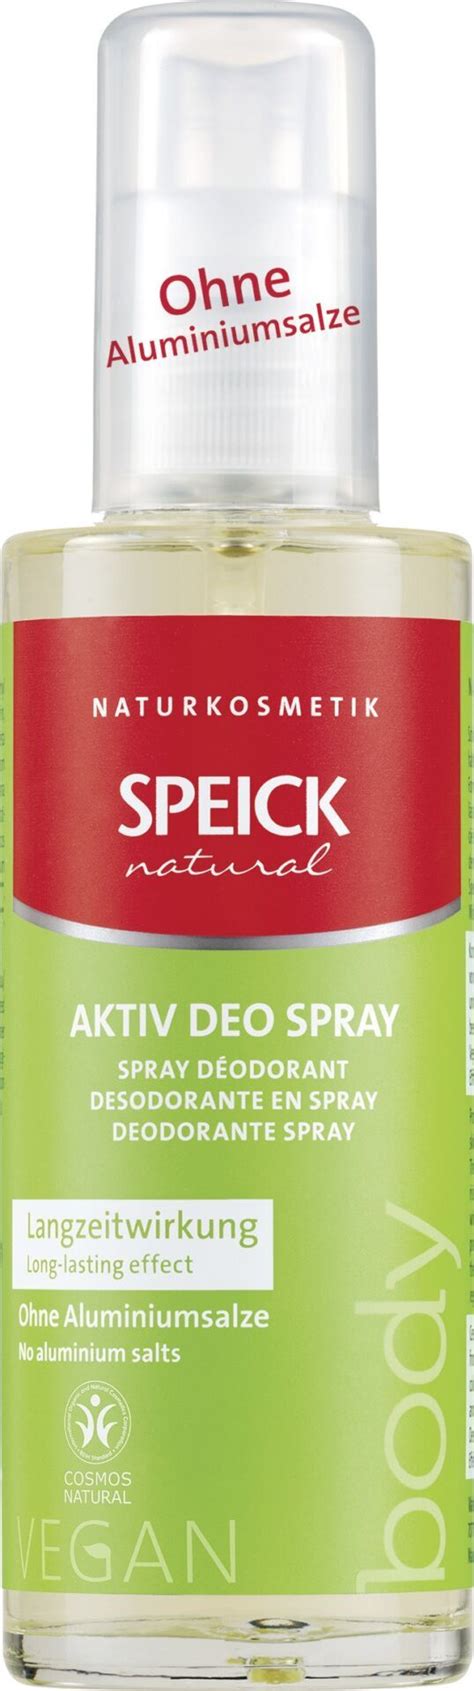 speick natural aktiv deo spray 75ml online kaufen